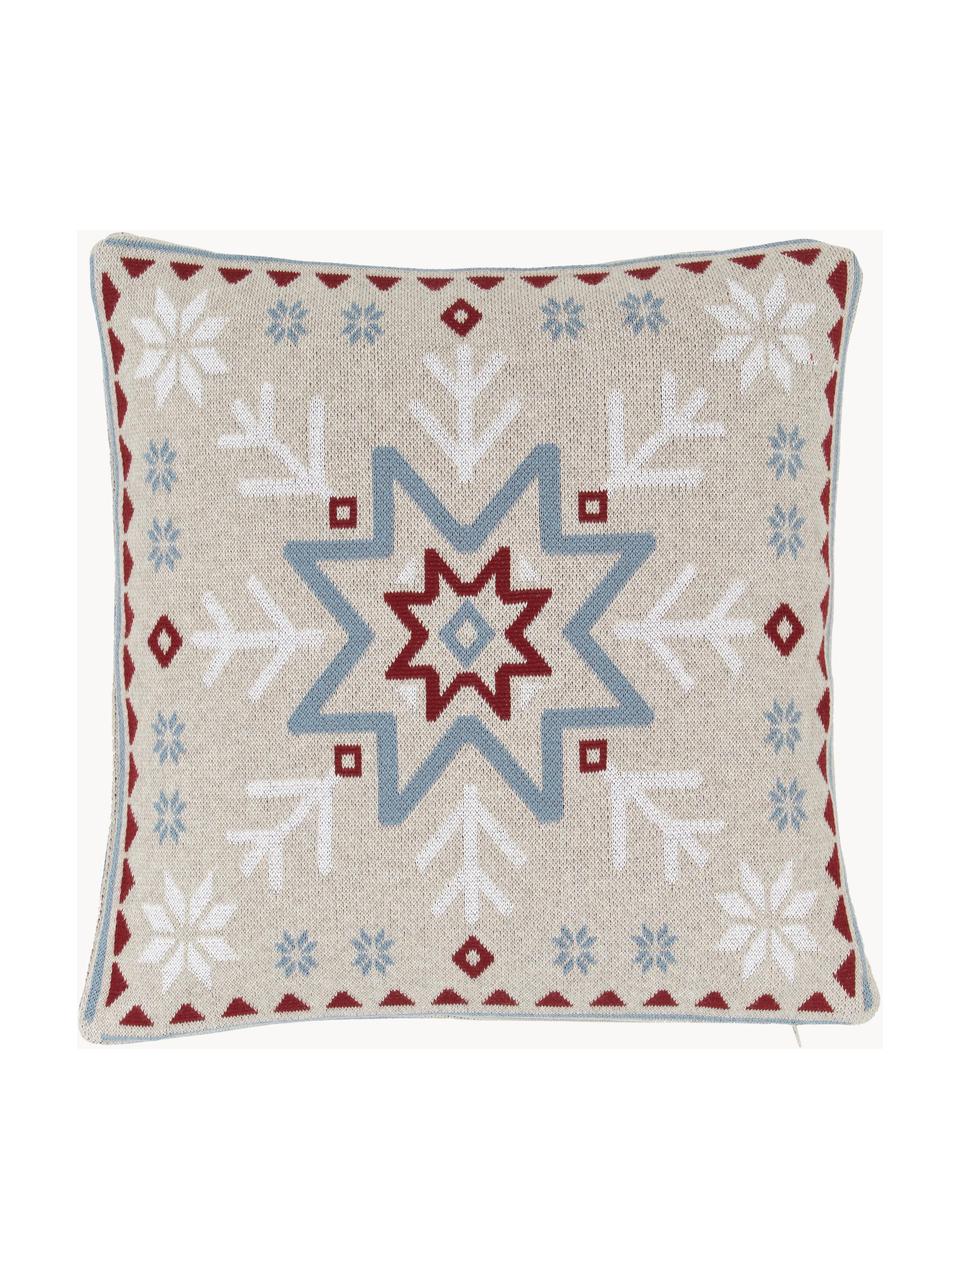 Poszewka na poduszkę z dzianiny Snowflake, 100% bawełna, Wielobarwny, S 40 x D 40 cm